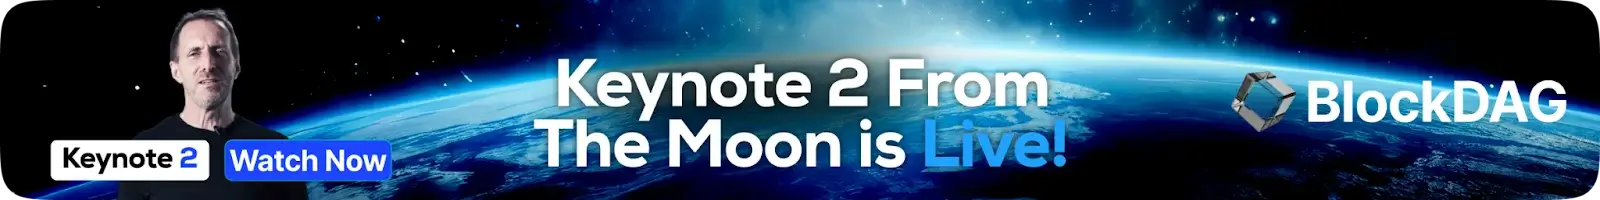 Keynote 2 desde la Luna ya está en vivo